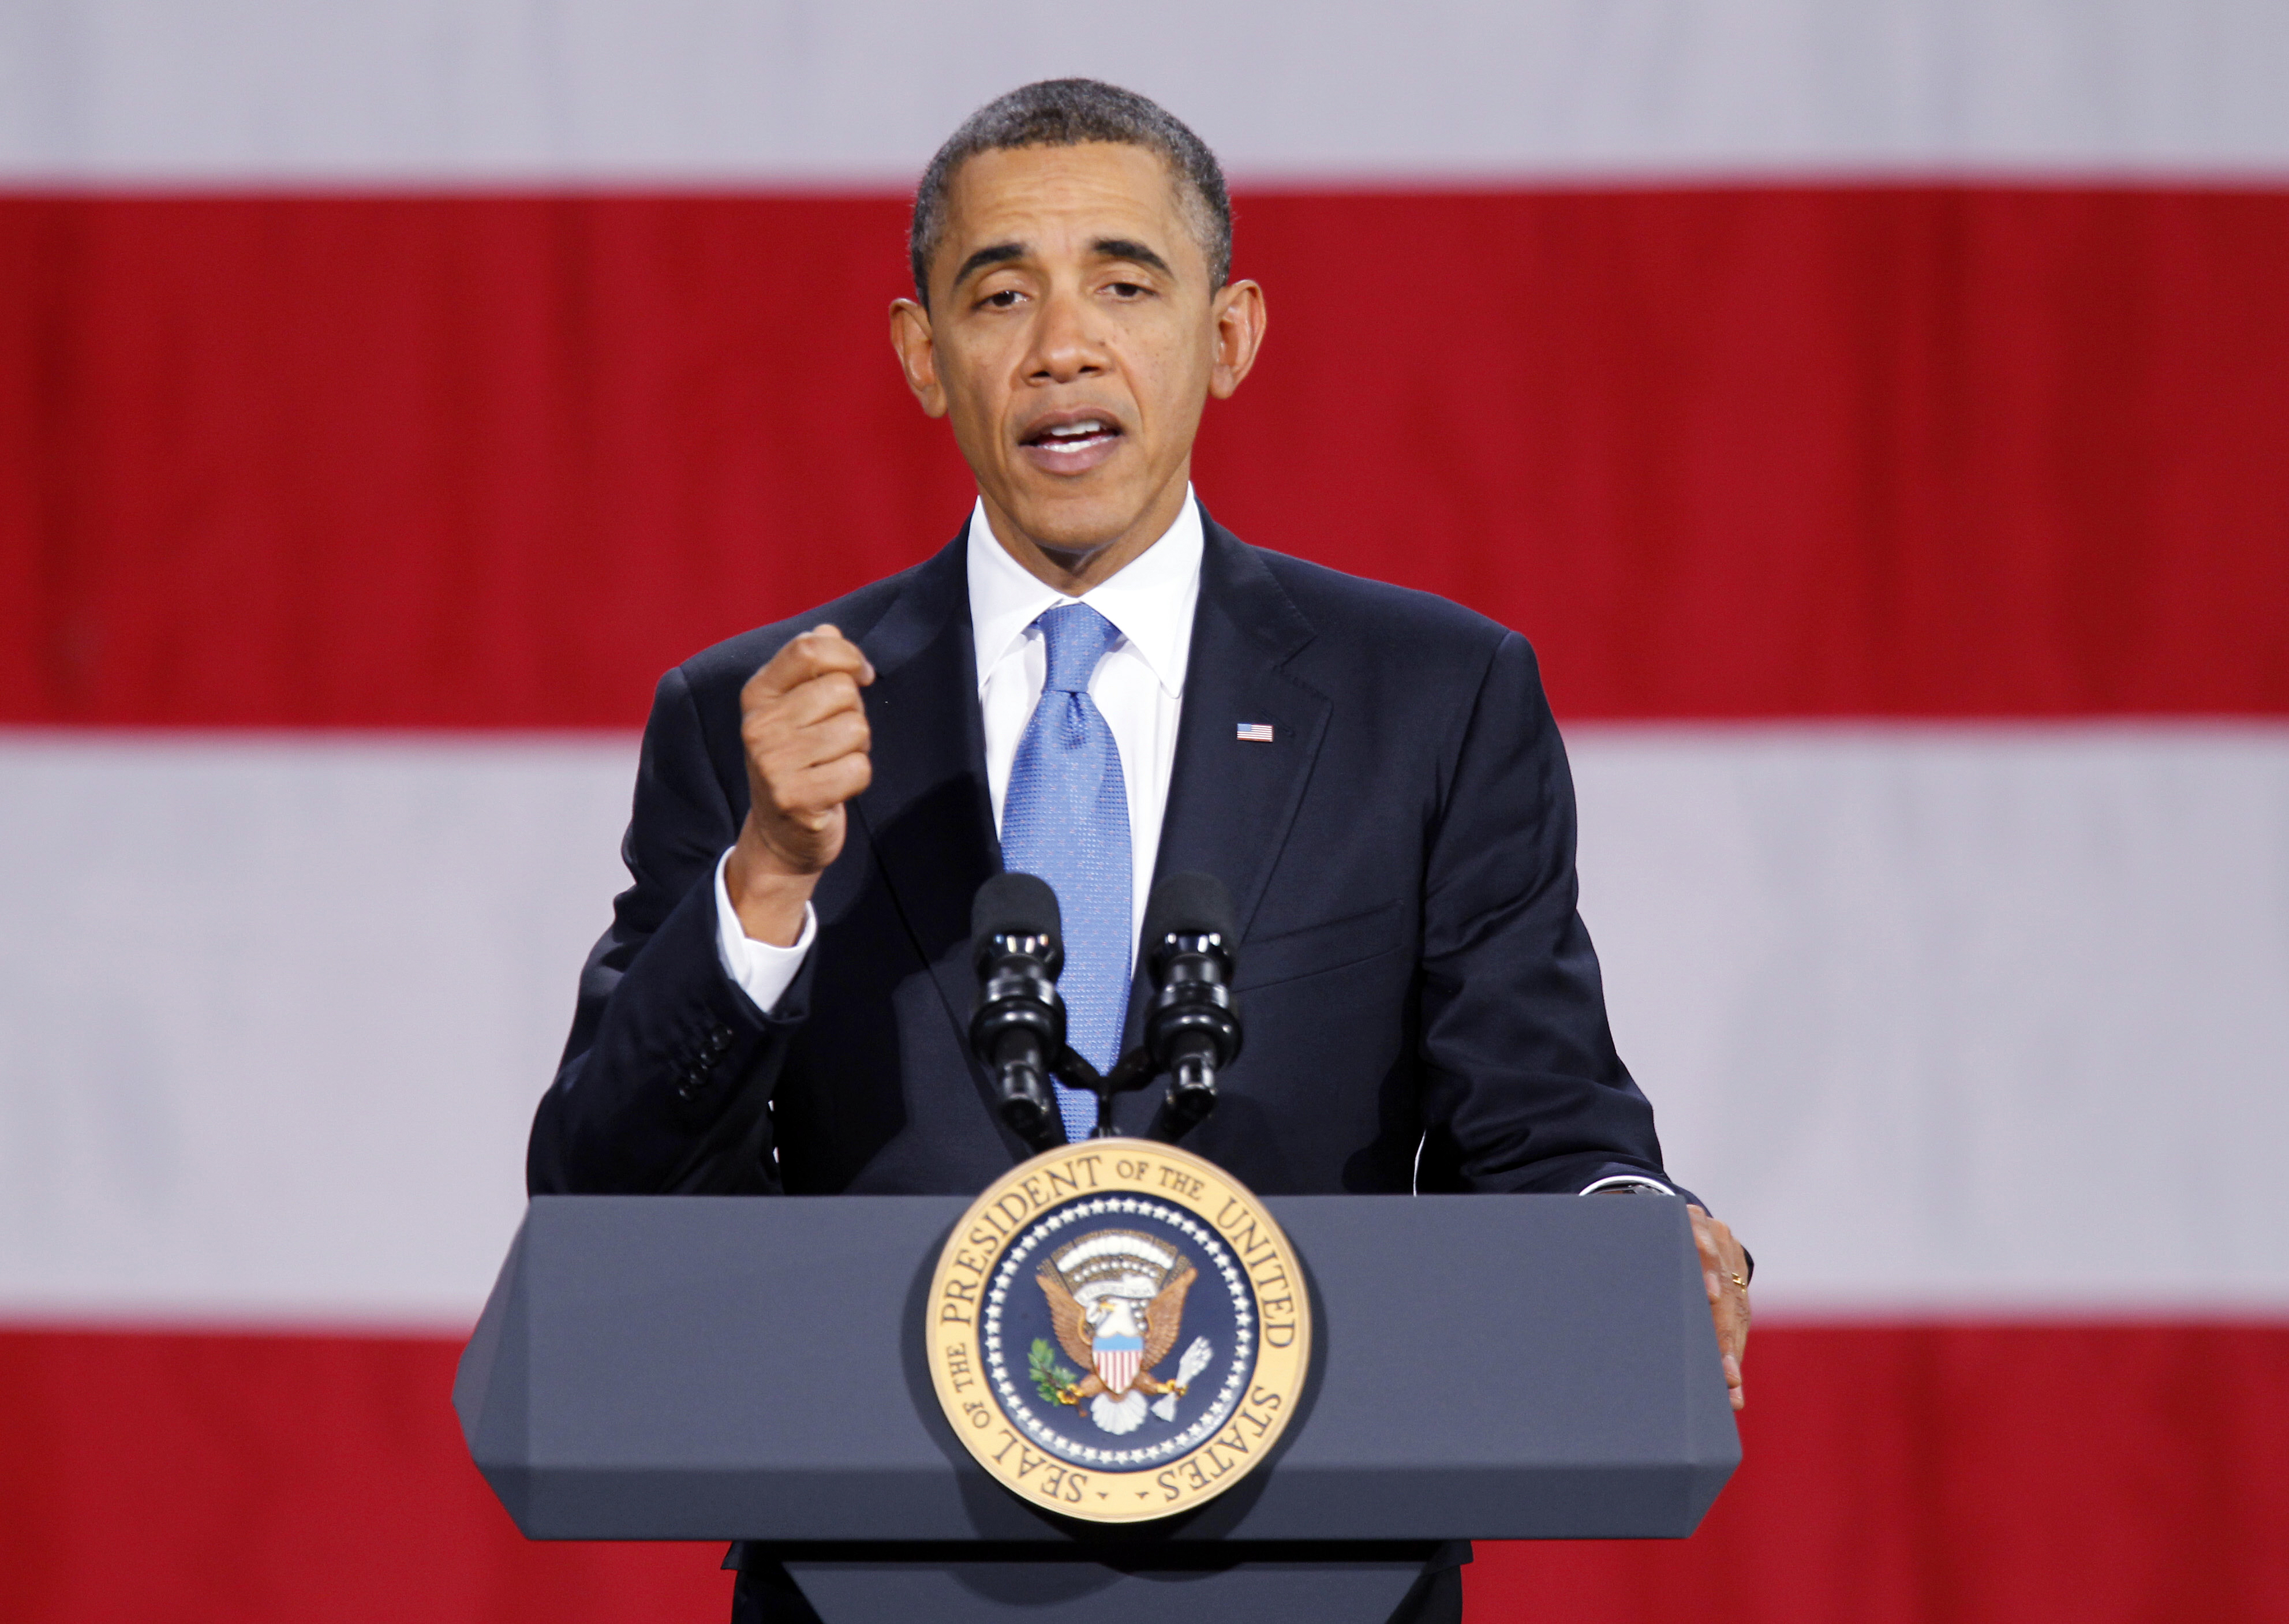 Fredspriset, Iran, Barack Obama, USA, Pentagon, Terror, Nobelpriset